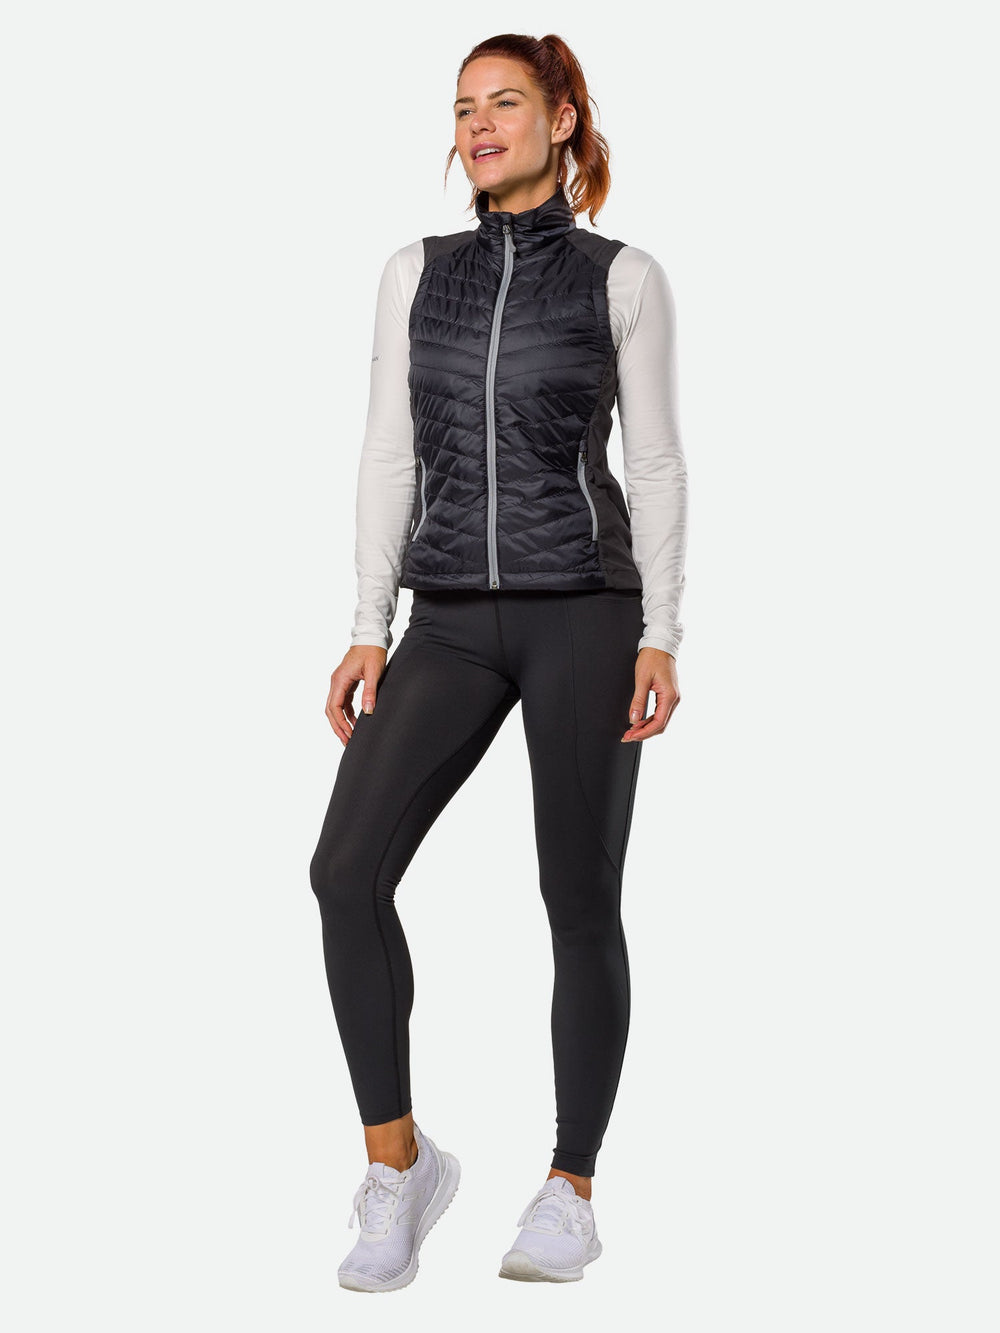 Fashionable Back Gathering Shockproof Yoga Sports Vest (Color:Black  Size:M), snatcher